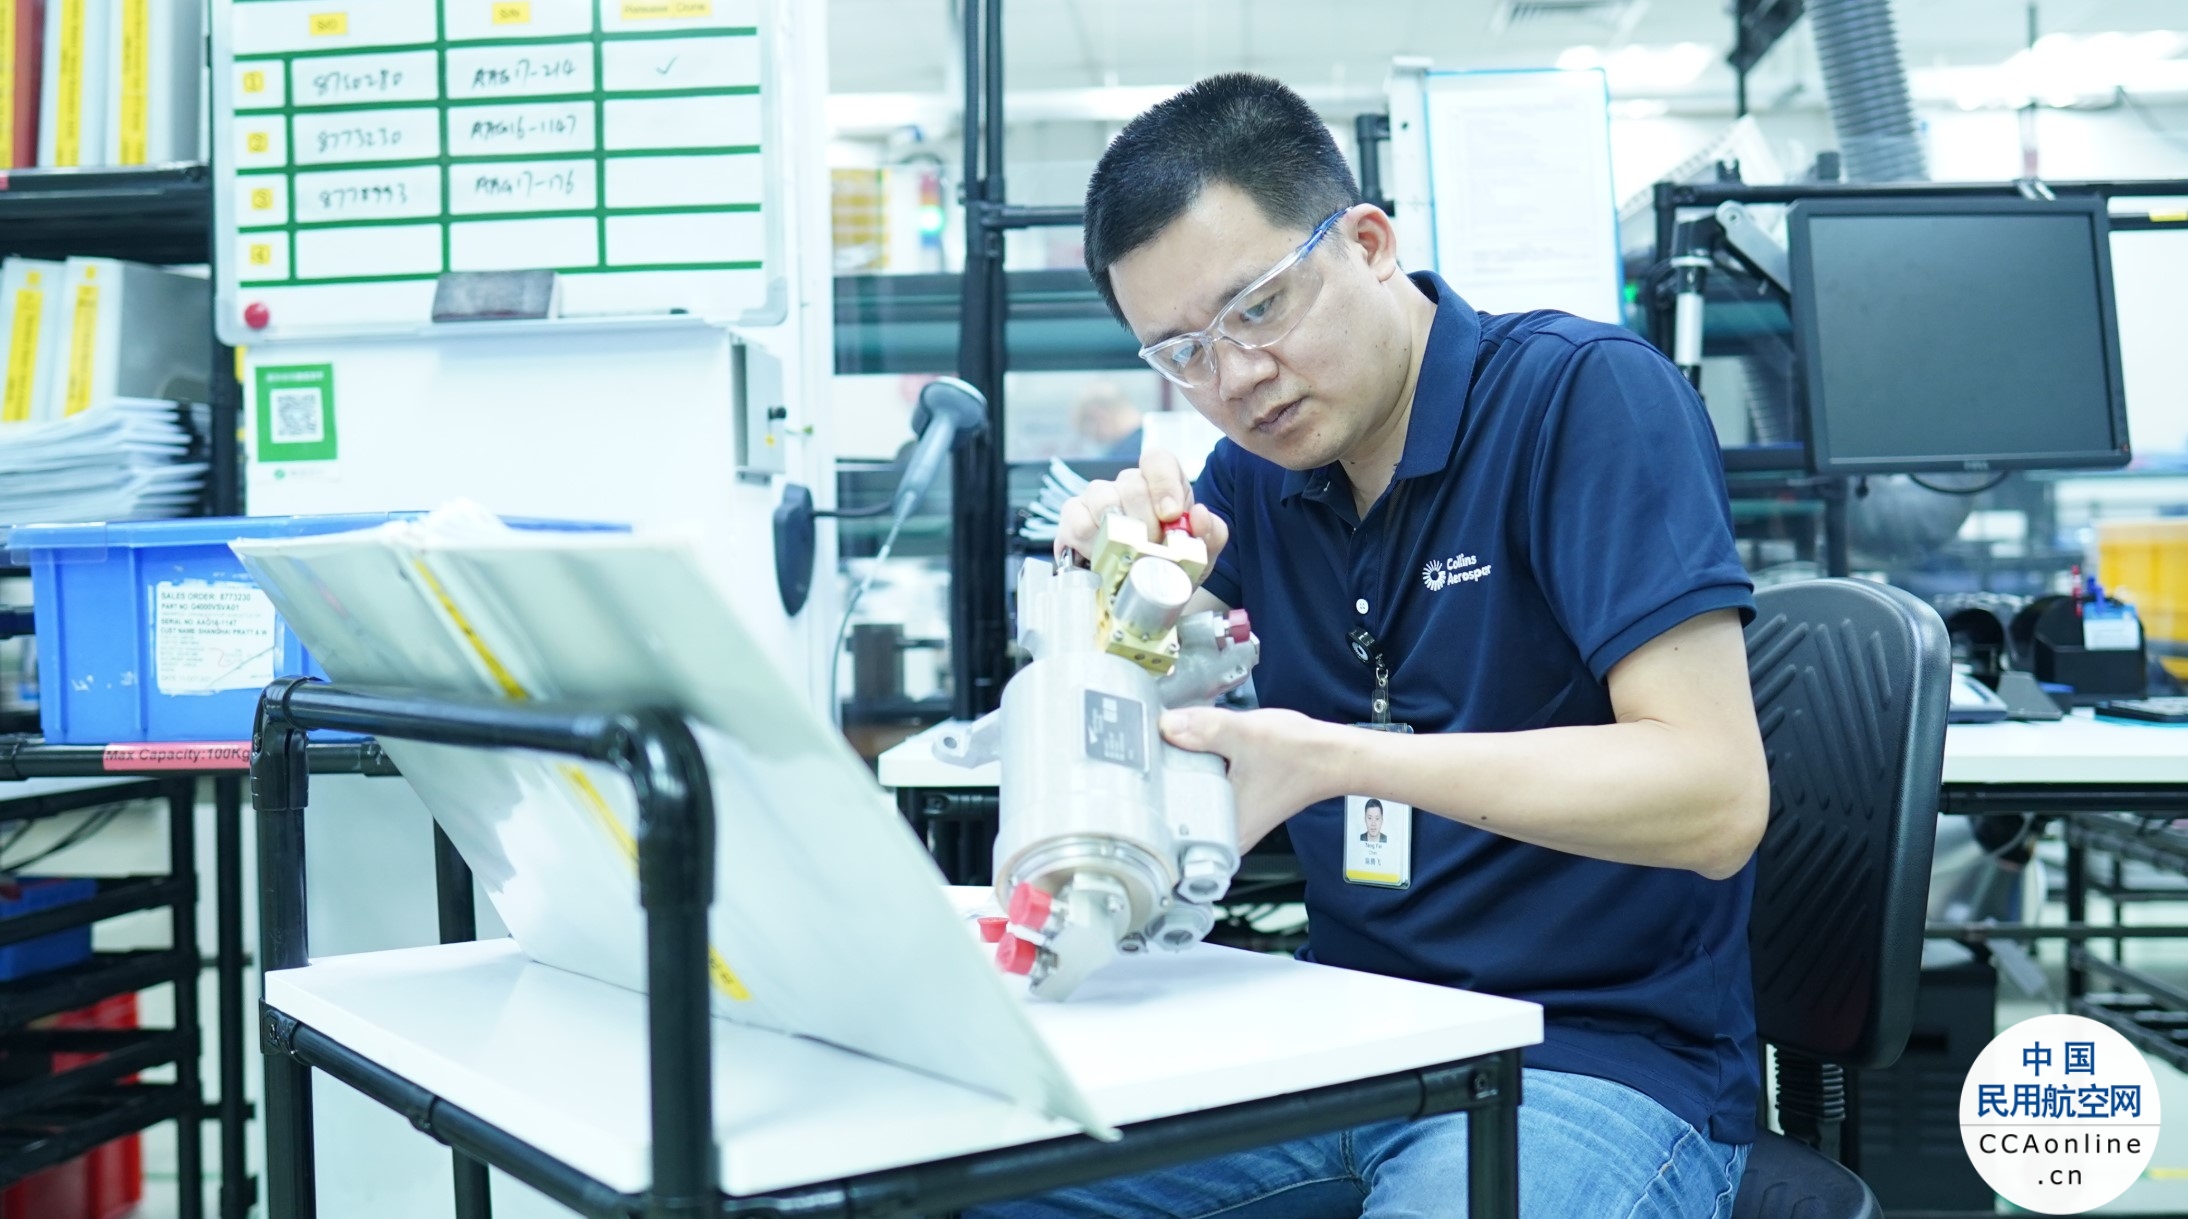 柯林斯宇航在中国和马来西亚扩展MRO服务能力